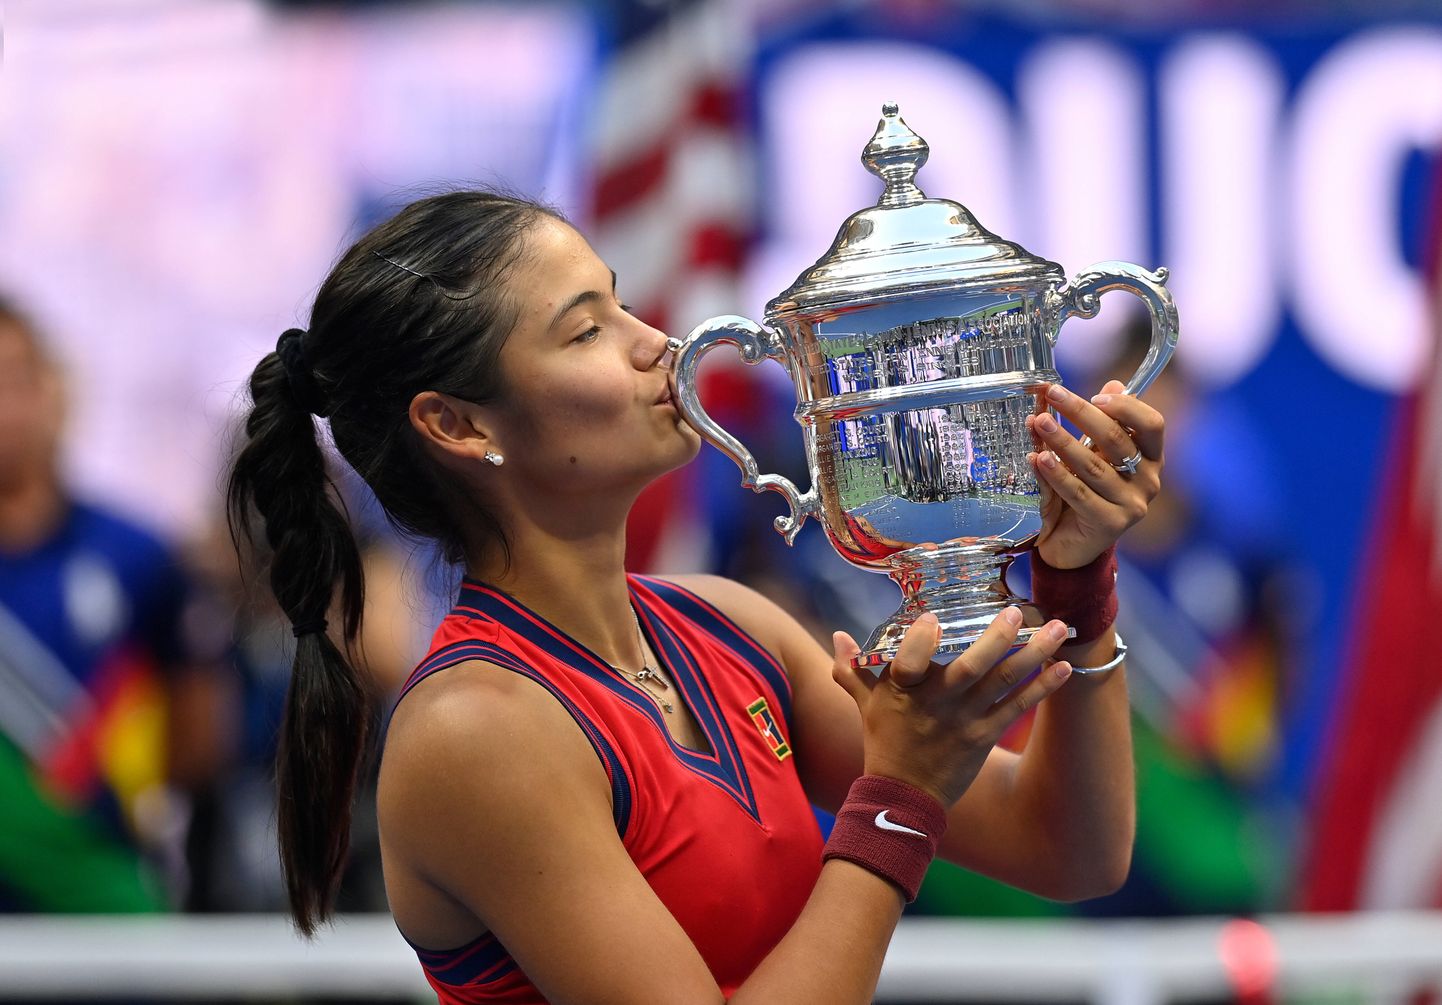 18-aastane Emma Raducanu võitis US Openi naisteturniiri.